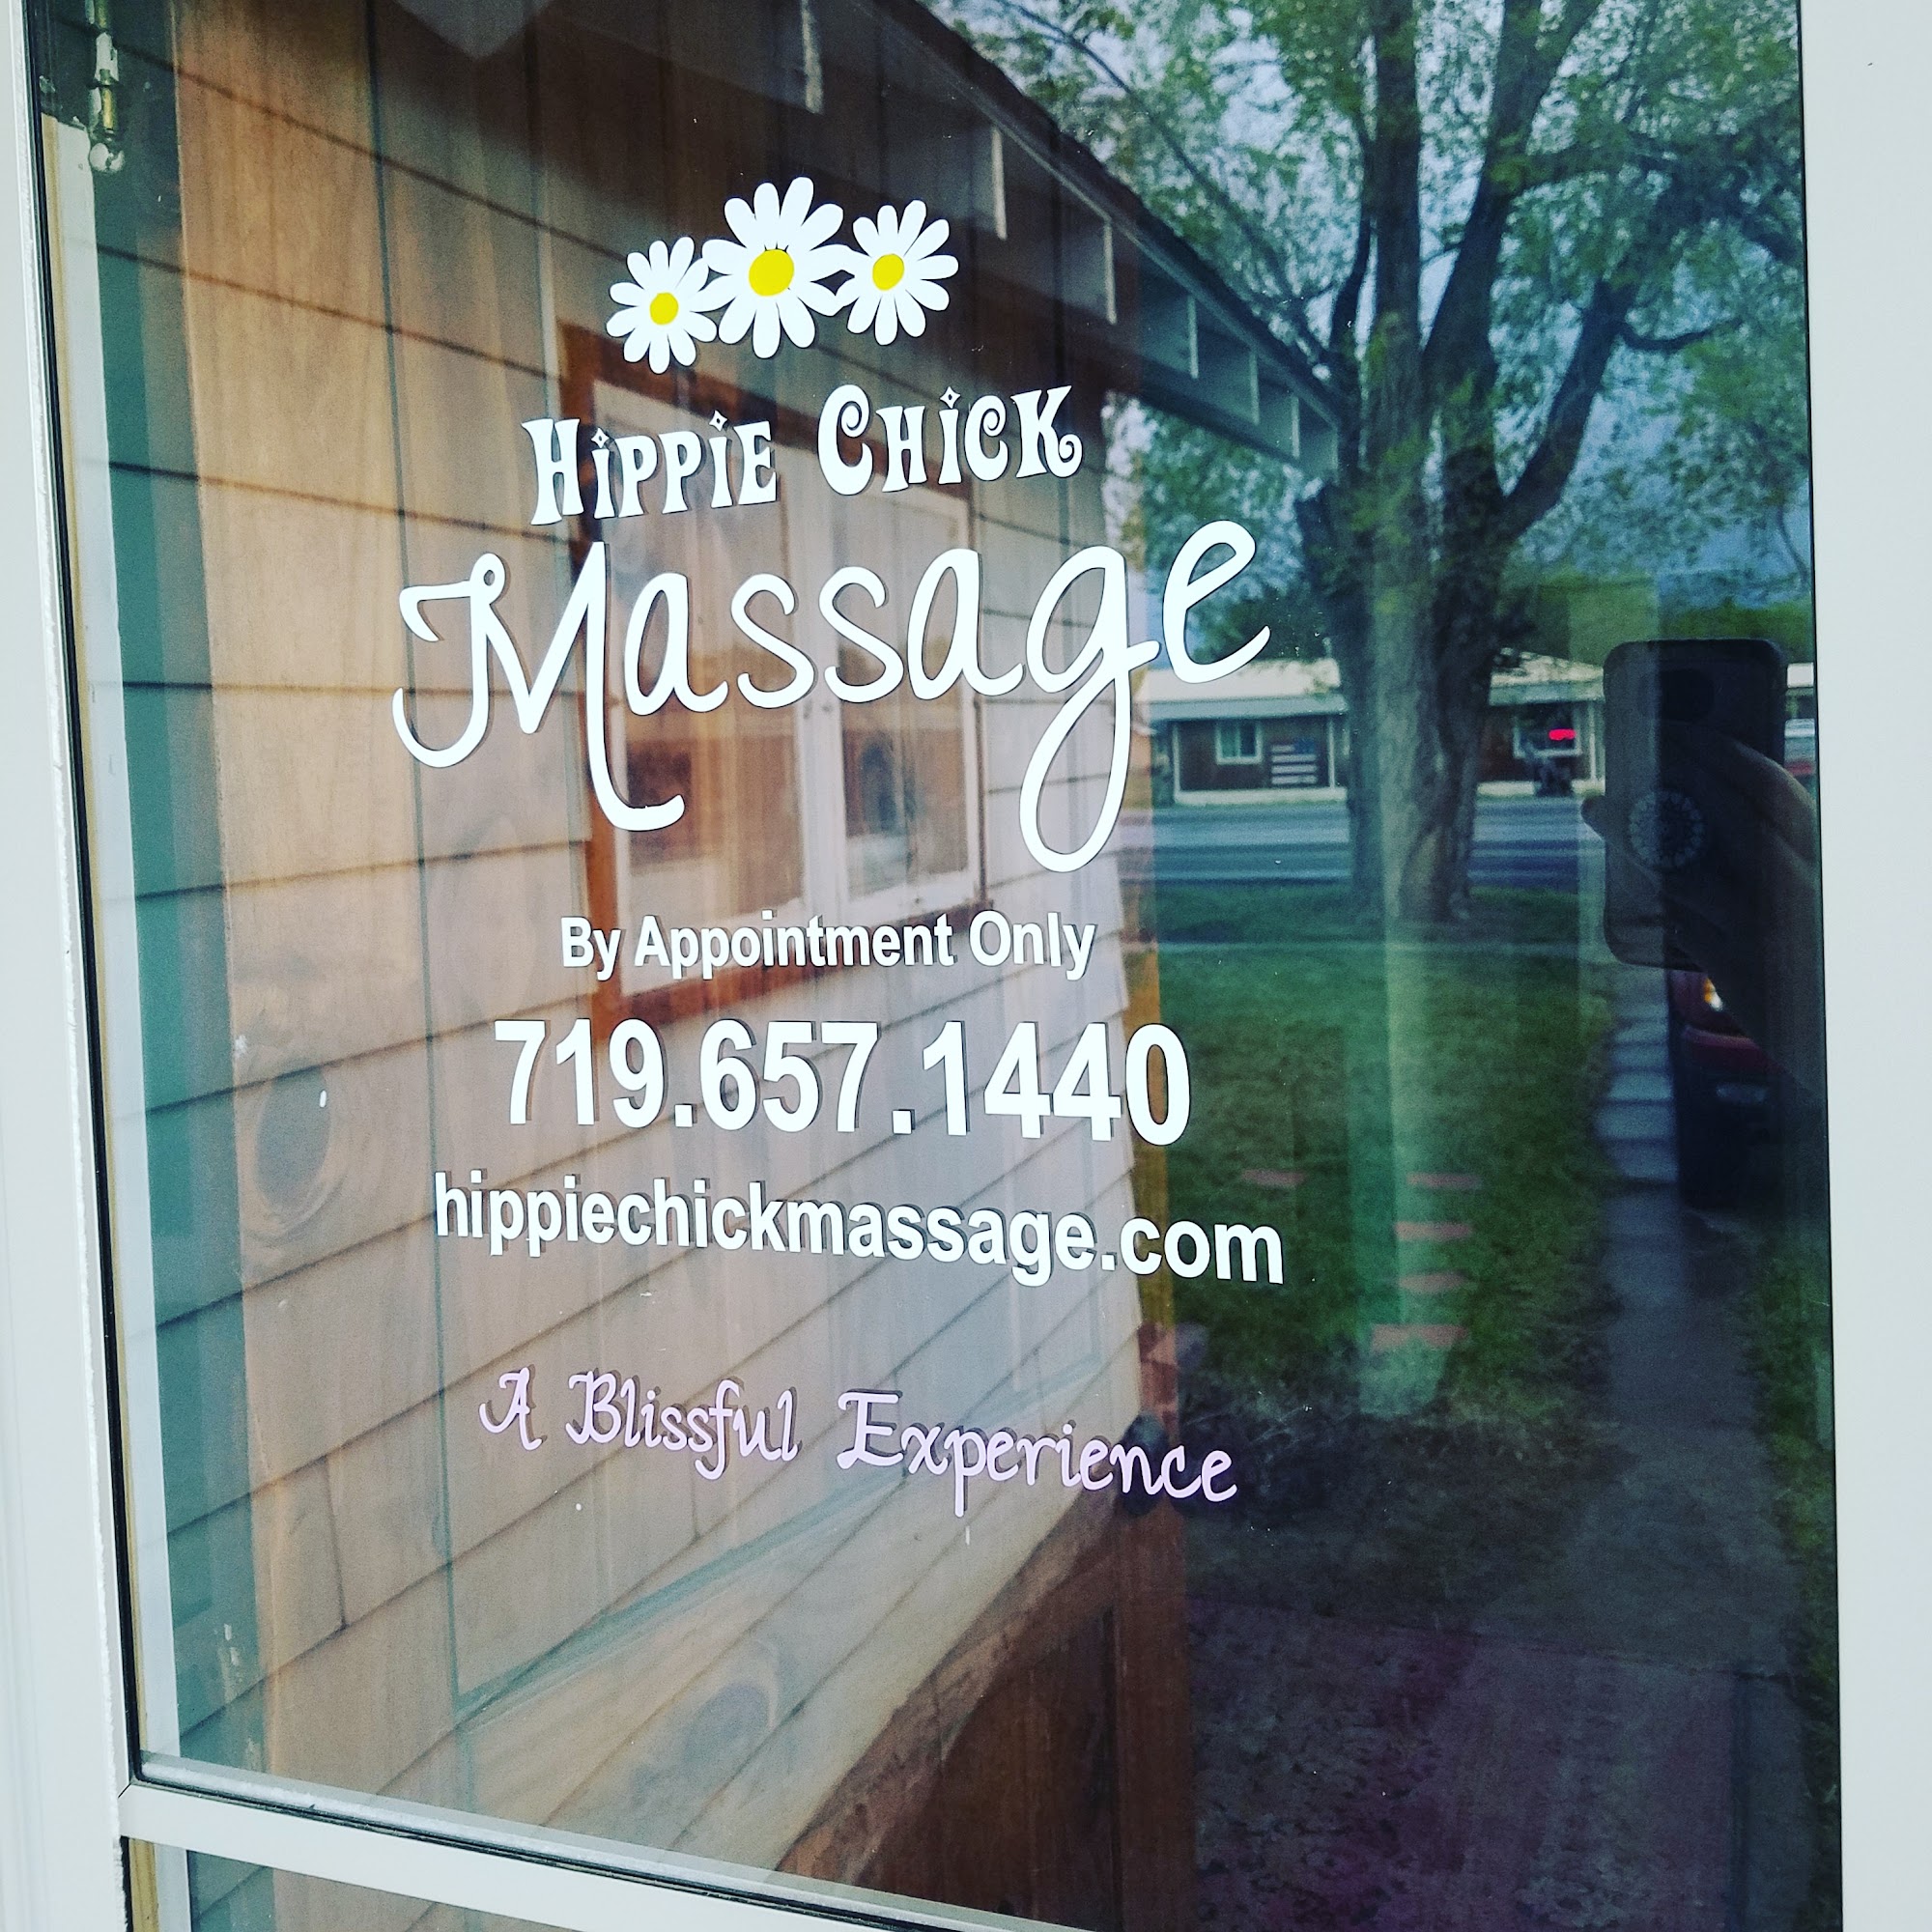 Hippie Chick Massage